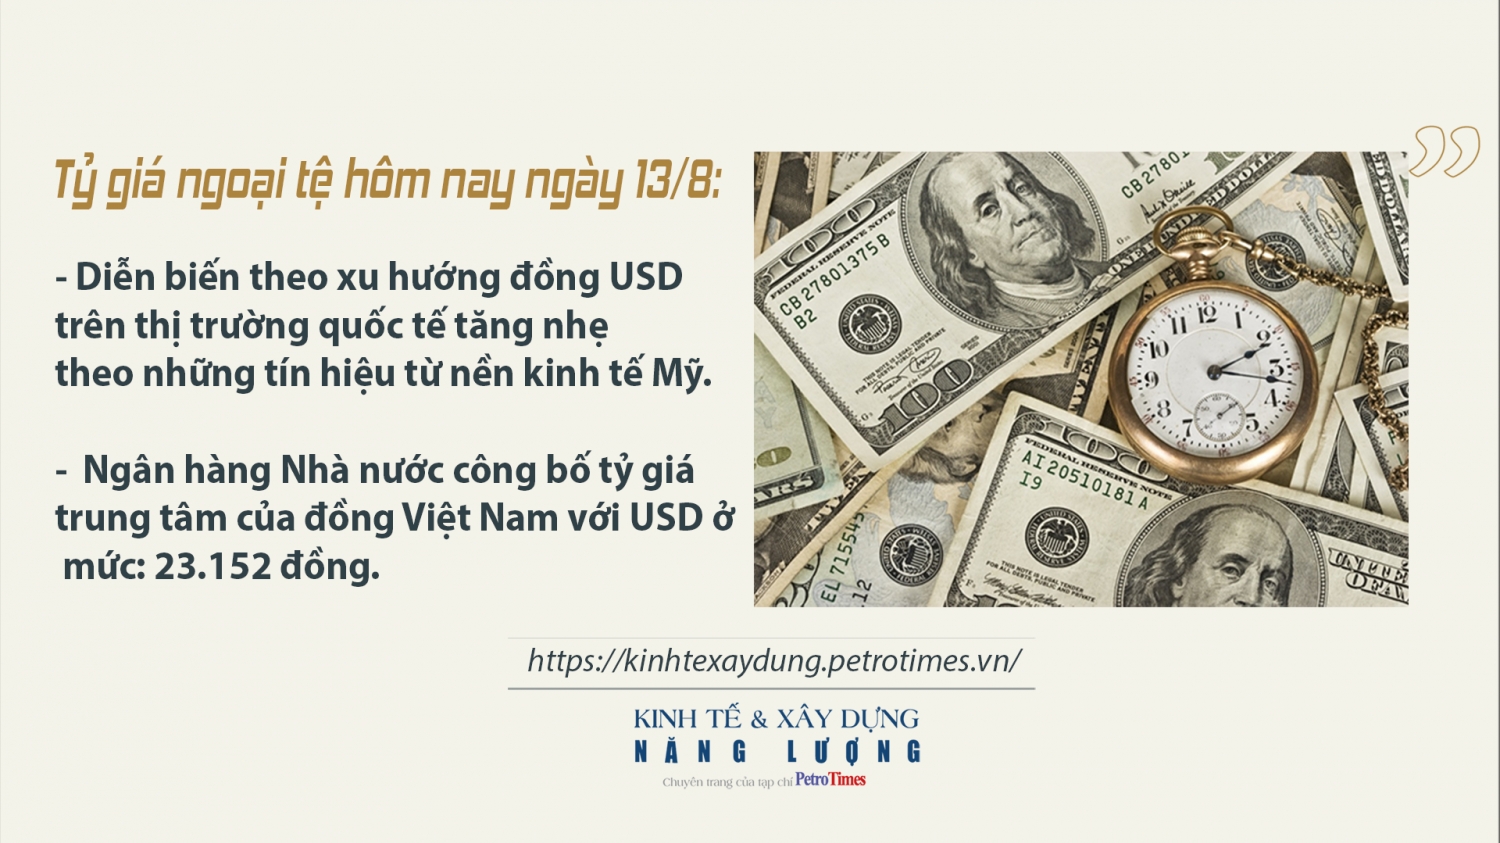 Tỷ giá ngoại tệ hôm nay ngày 13/8: Đồng USD tăng nhẹ